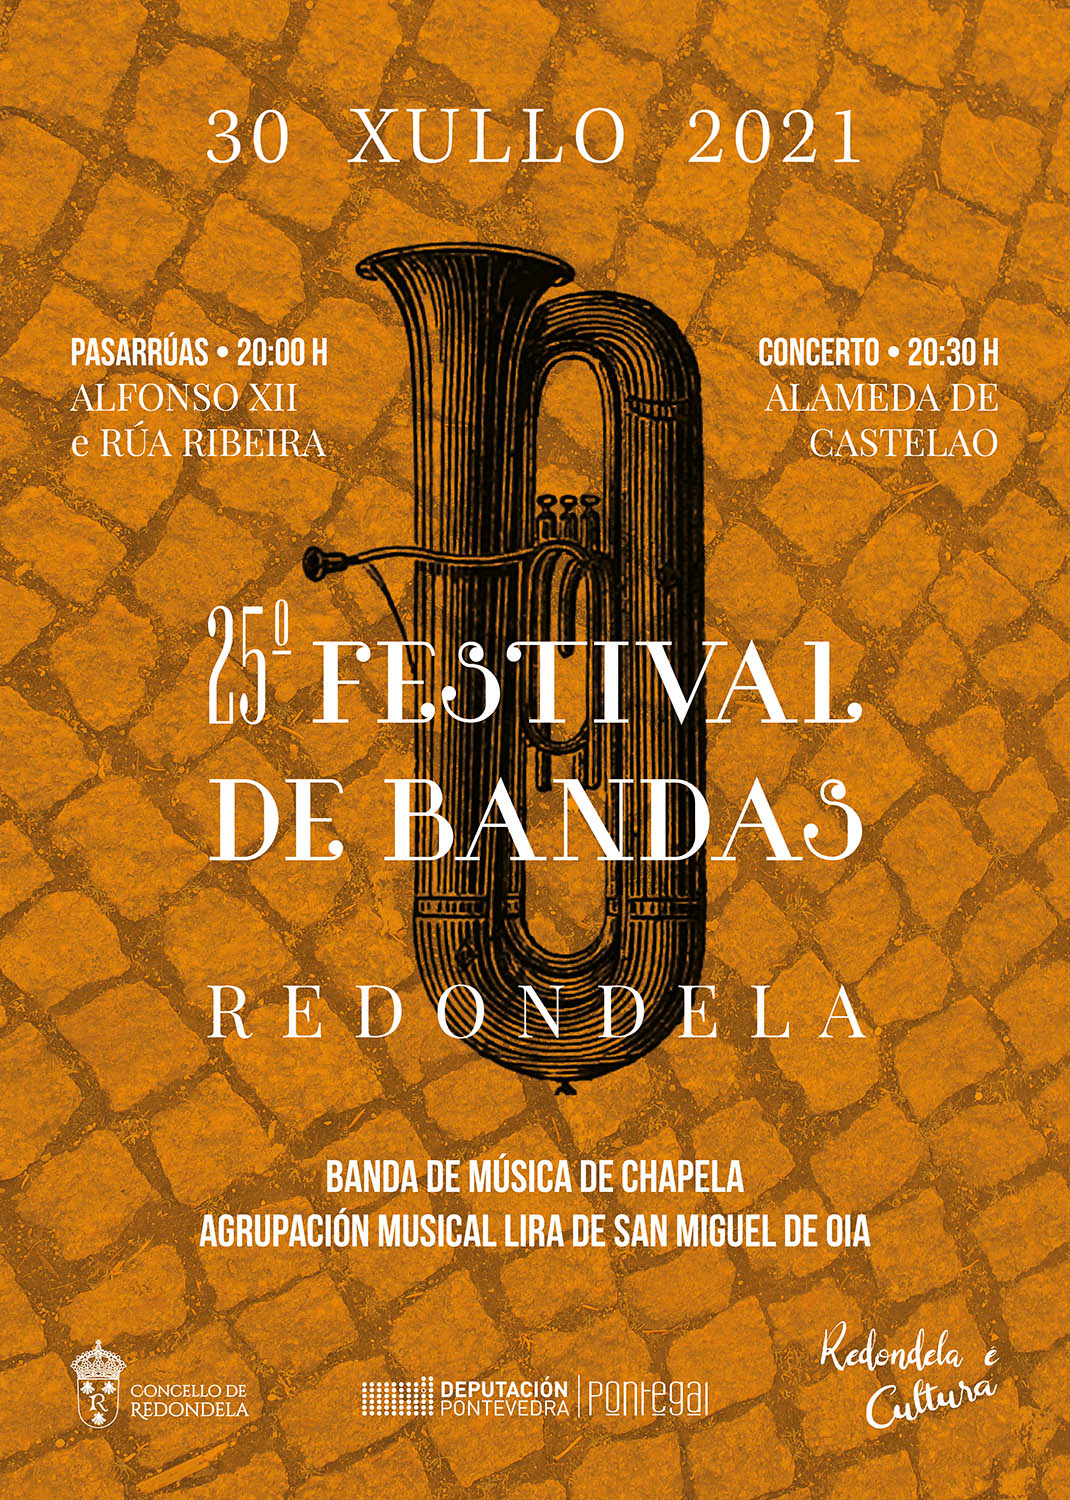 festival bandas Redondela Pontevedra Diseño Publicidad Marketing Evento cartel cultura